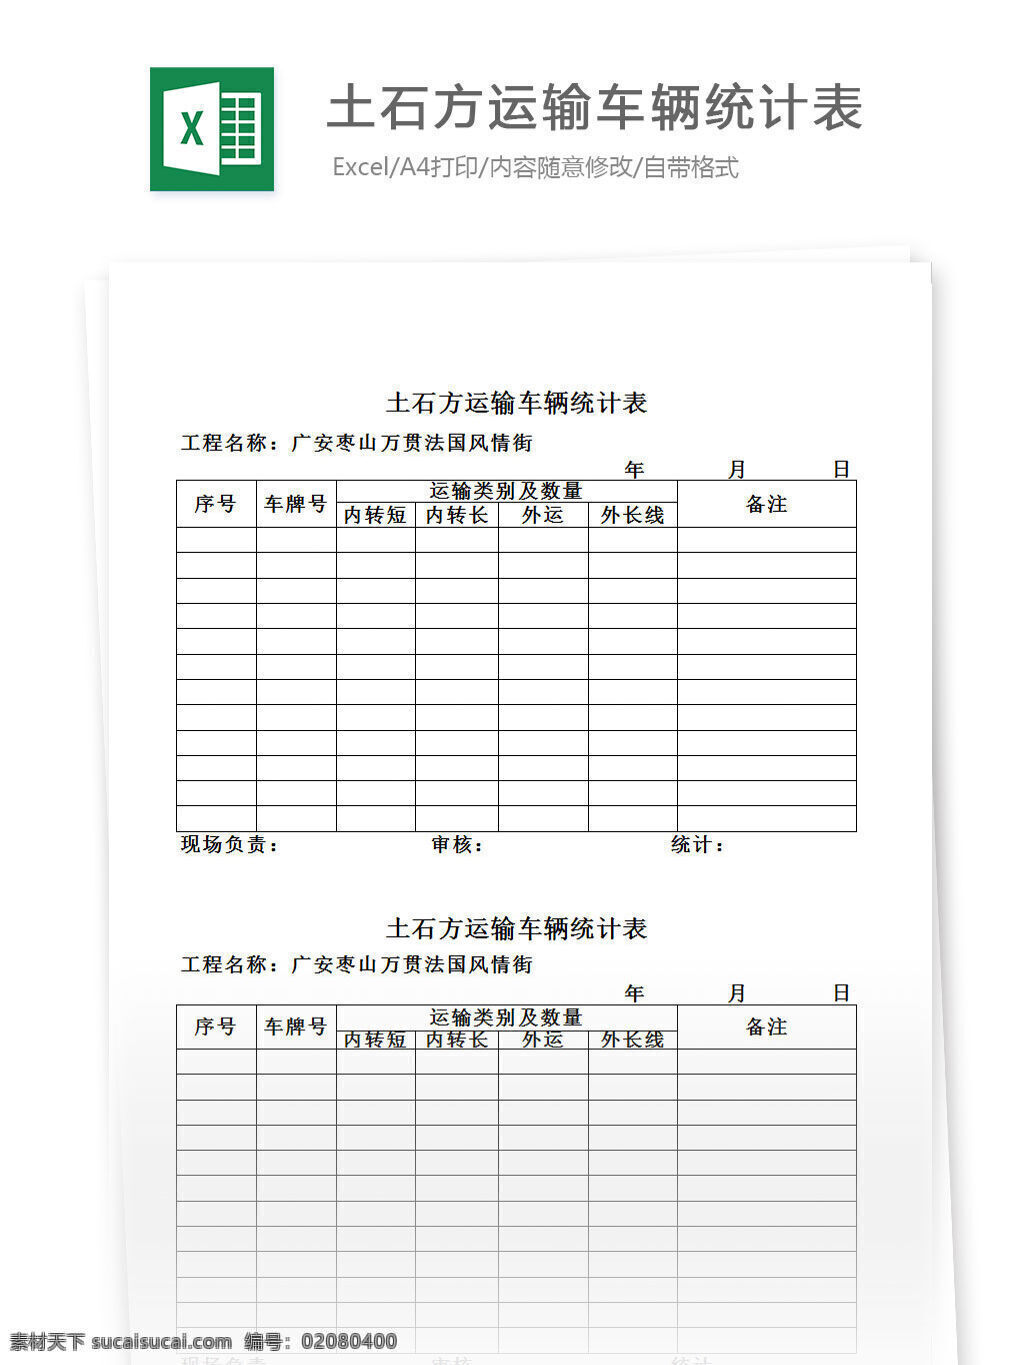 土石方 运输 车辆 统计表 表格 表格模板 表格设计 图表 运输统计 车辆统计 管理